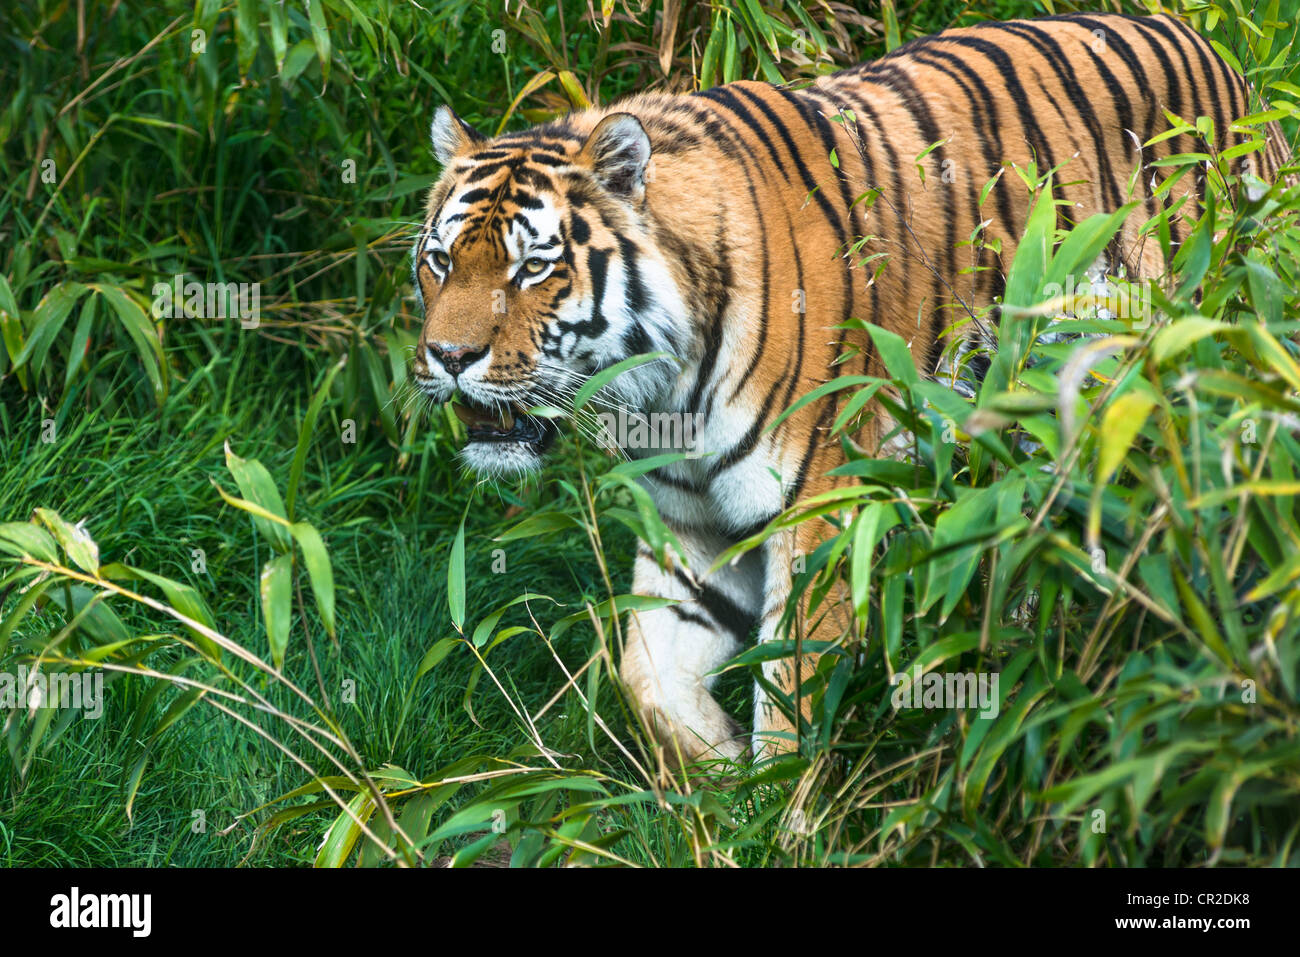 Bengal Tiger walking through vegetation. Stock Photo